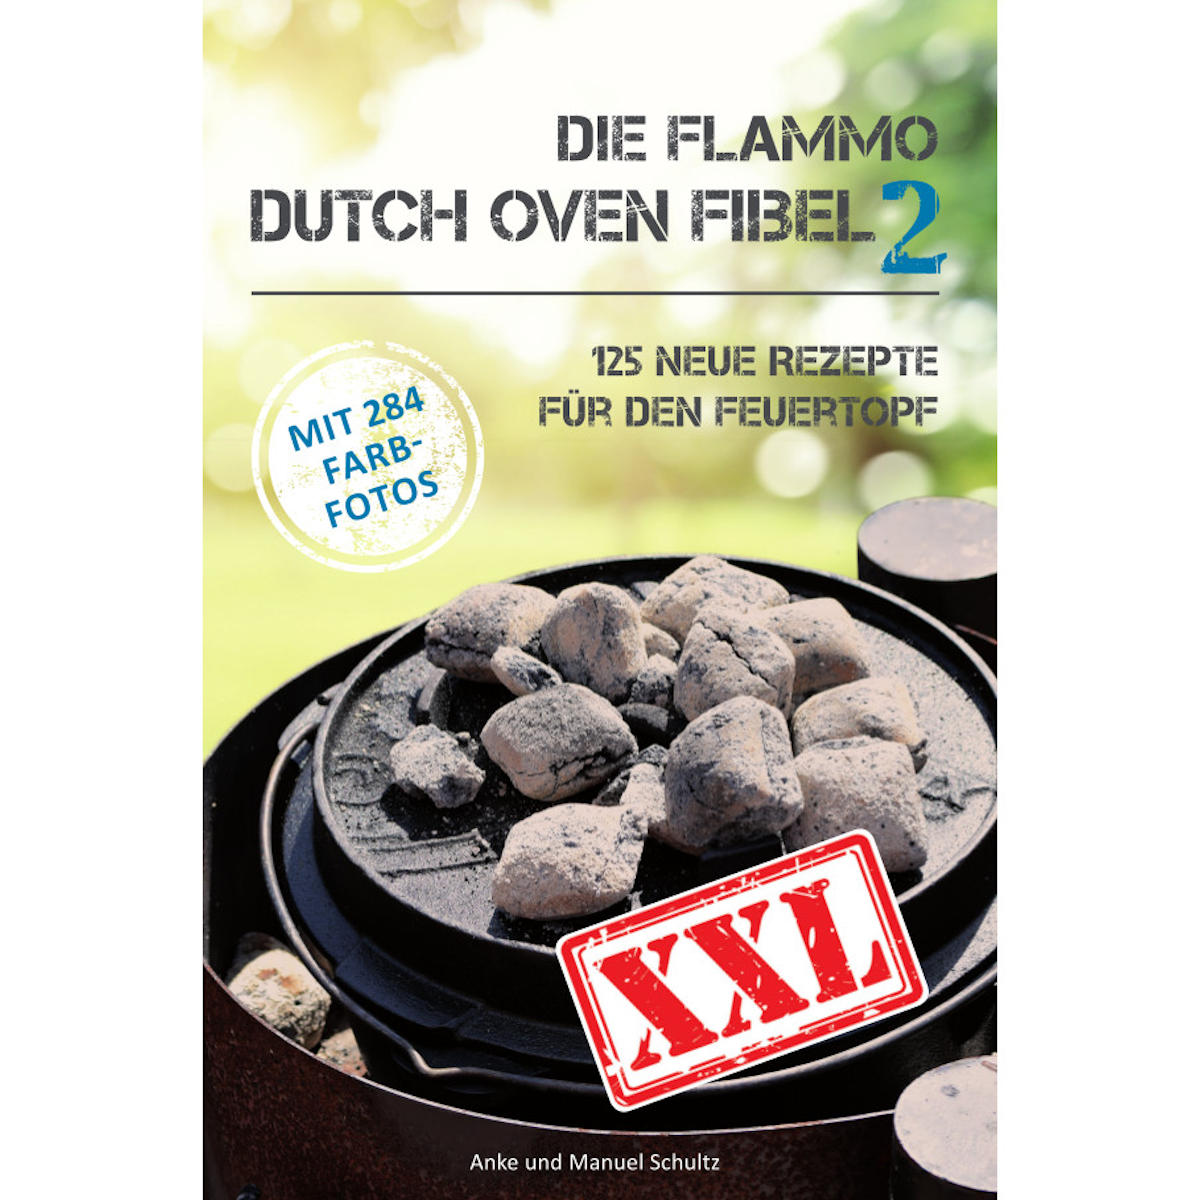 Dutch Oven Fibel 2